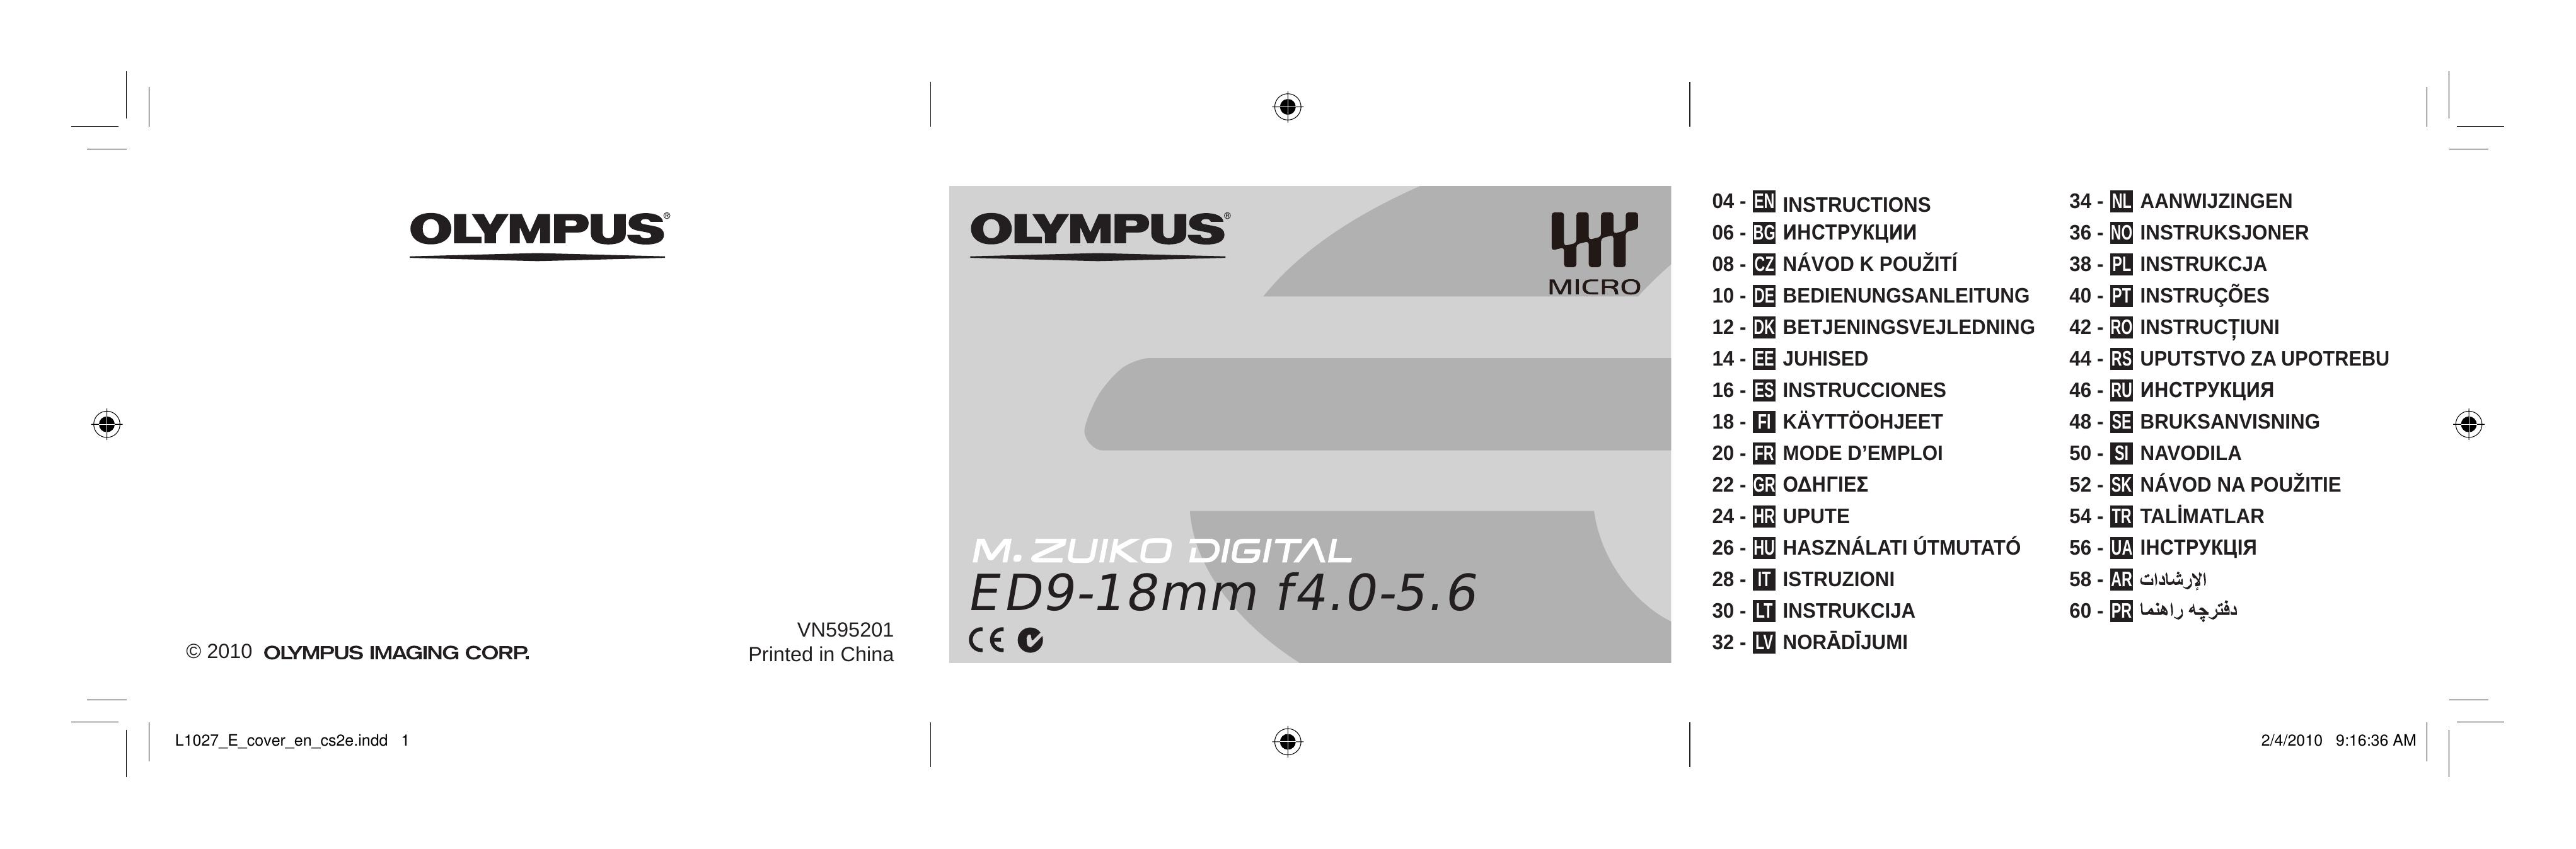 Olympus 261058 Camera Lens User Manual